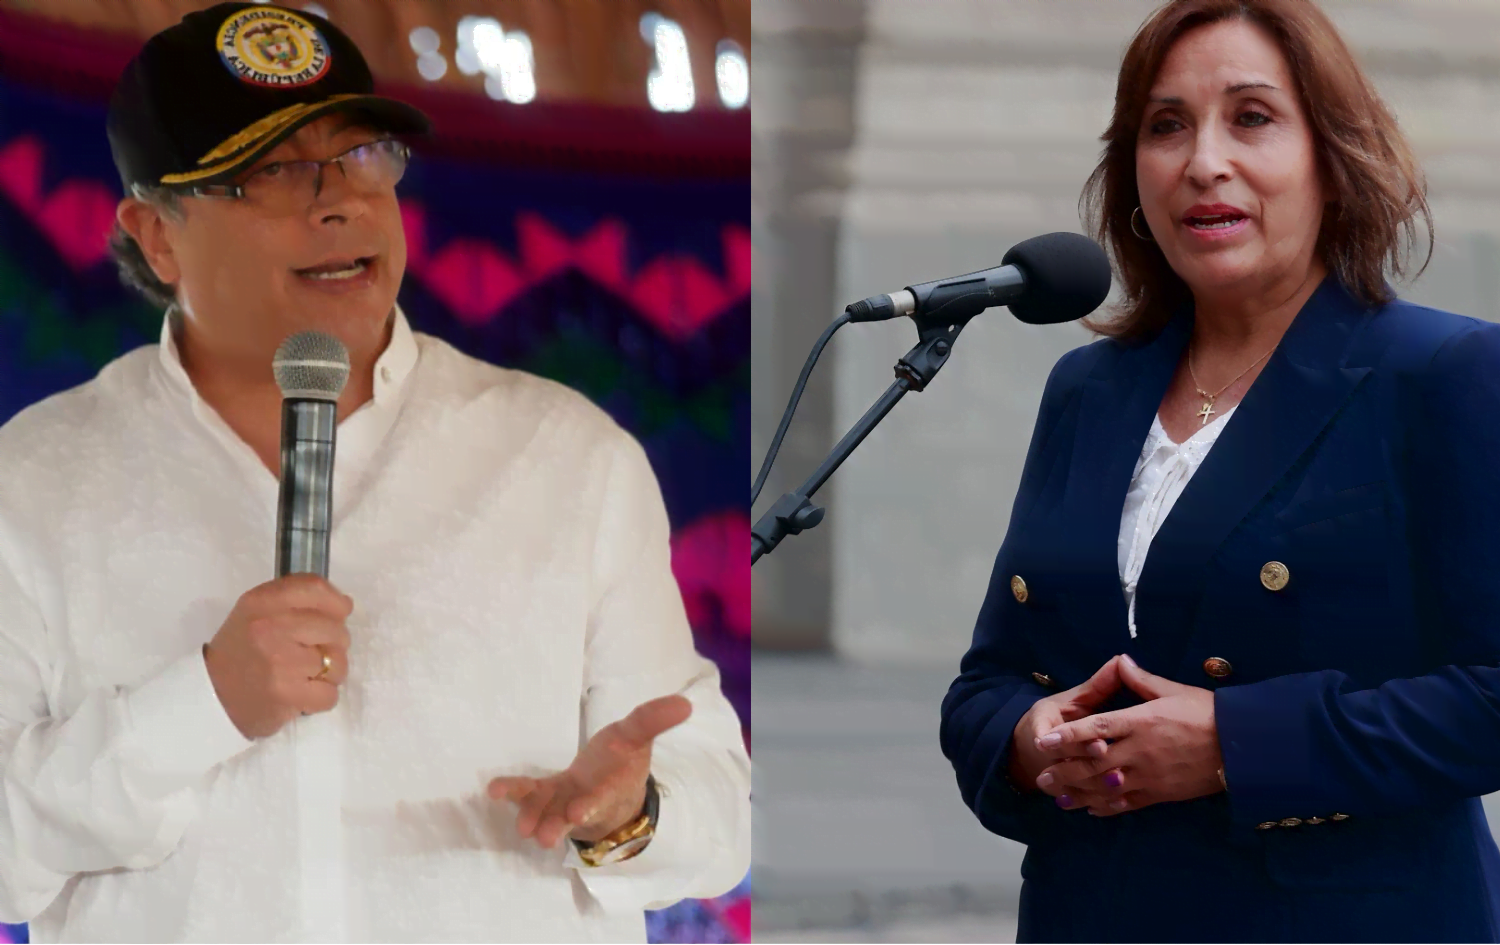 presidentes de perú y colombia en alocuciones pública